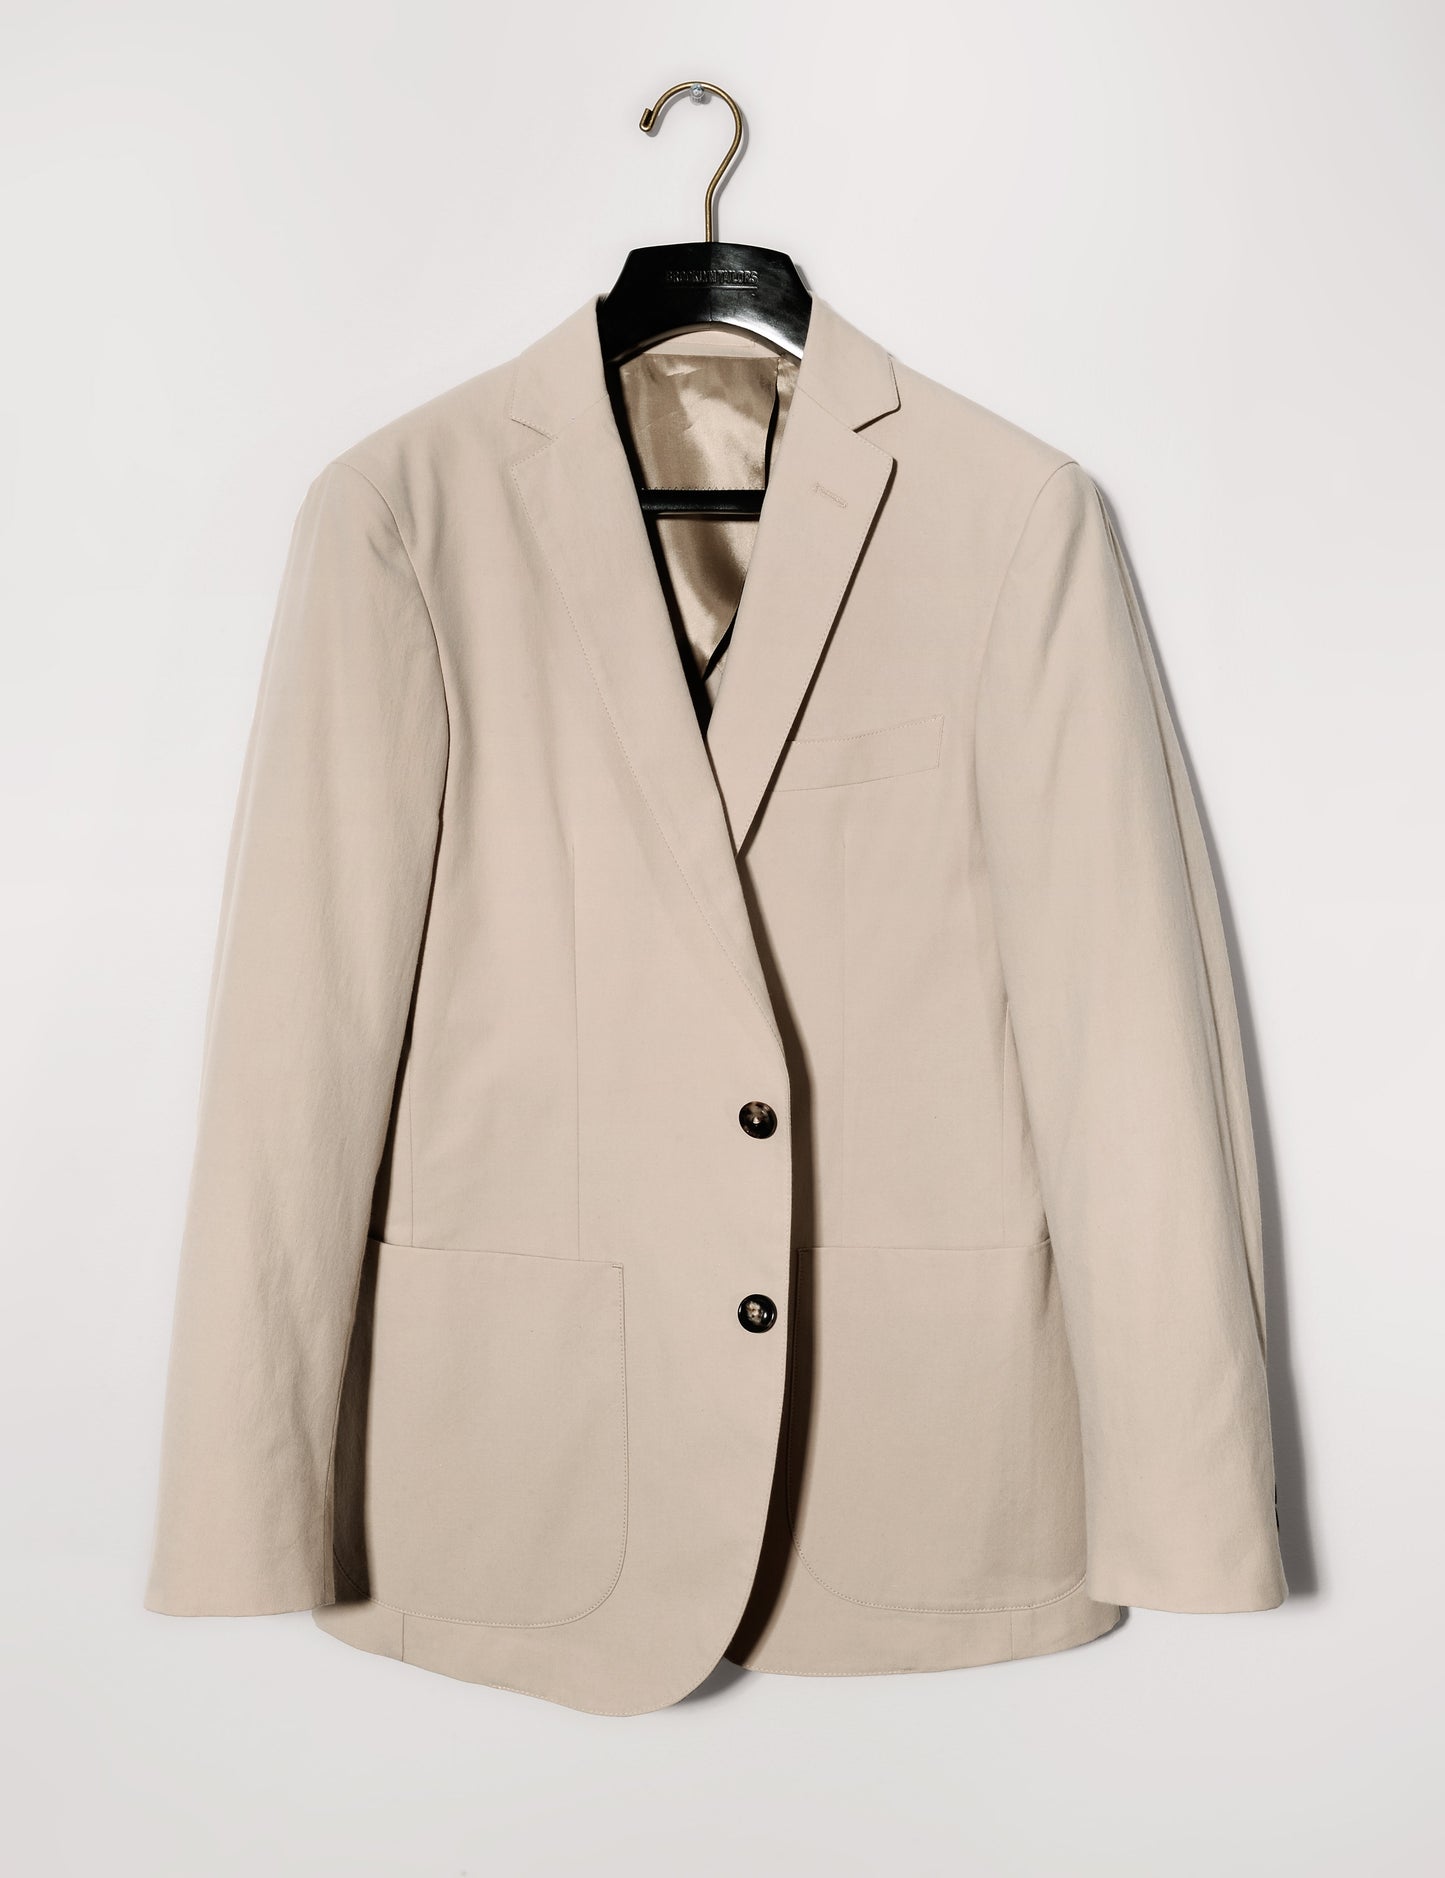 Brooklyn Tailors BKT35 Unstructured Jacket in Crisp Cotton Blend - Desert Sand full length shot on hanger